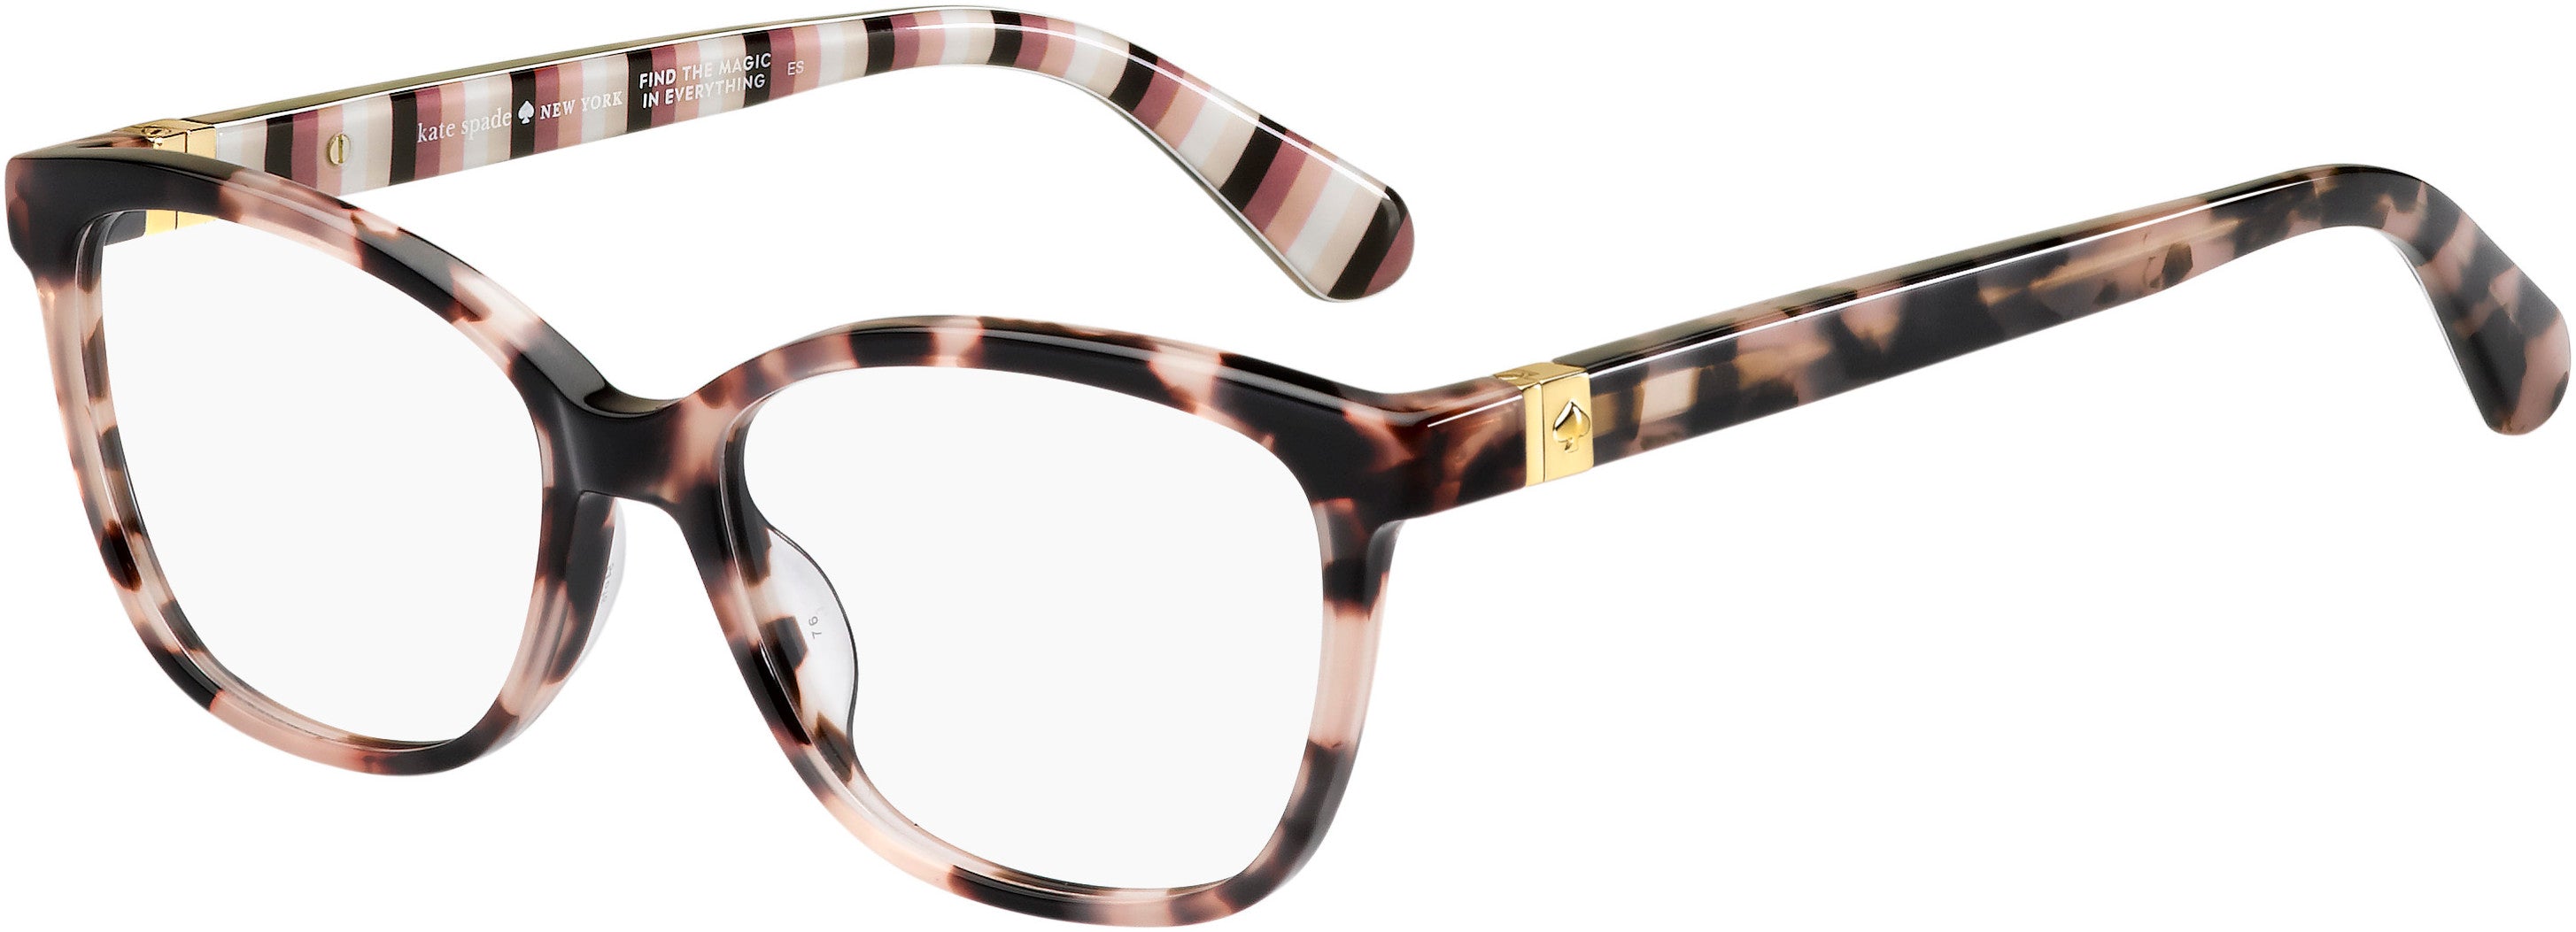 Kate Spade Emilyn Rectangular Eyeglasses 0HT8-0HT8  Pink Havana (00 Demo Lens)